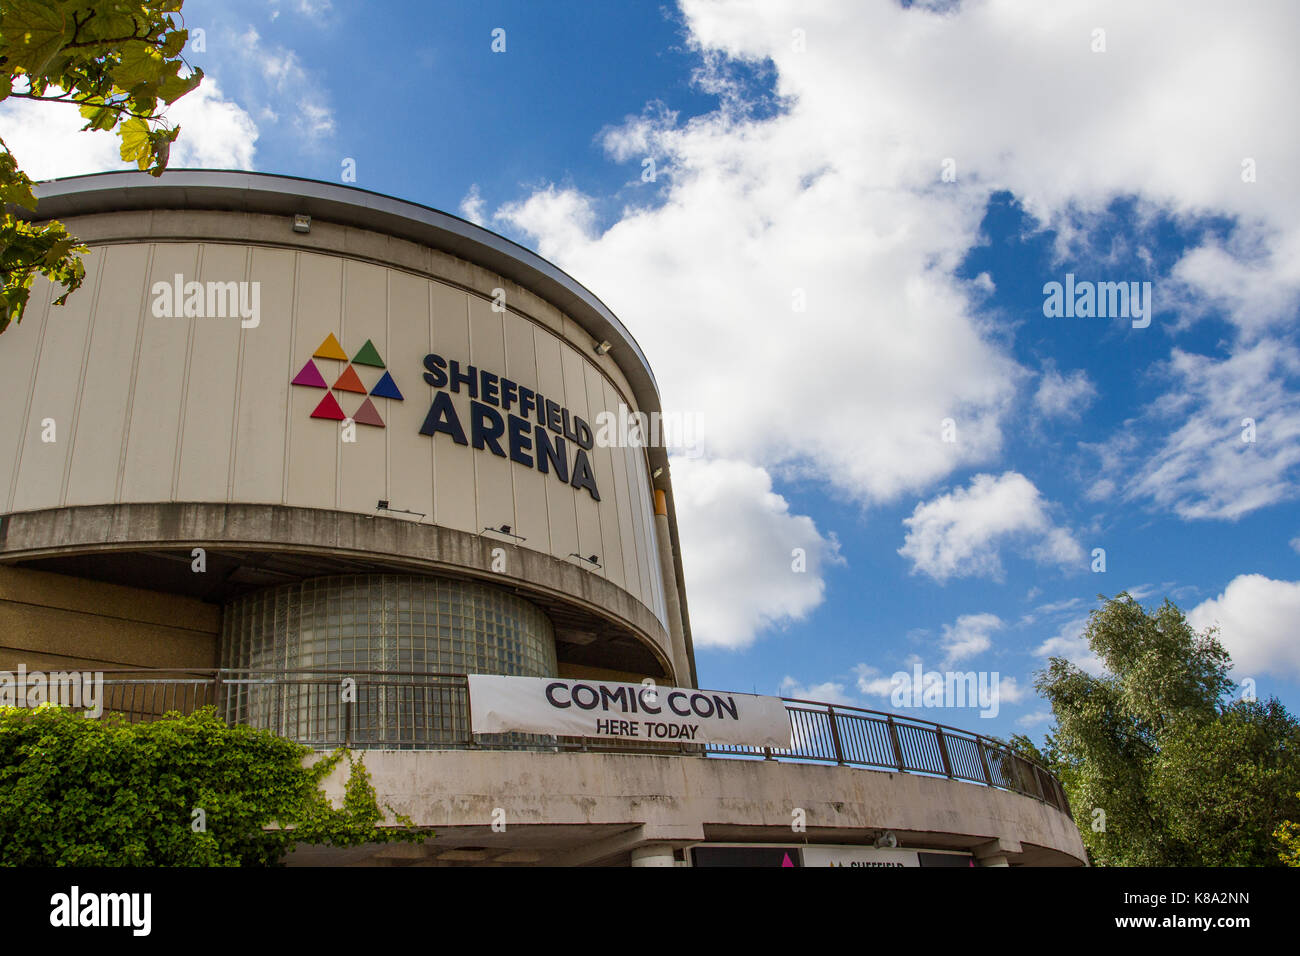 SHEFFIELD ARENA, Sheffield, Großbritannien - 12 August 2017. Ein externes Bild der populären Musik und Veranstaltungsort der Sheffield Arena in Sheffield, Großbritannien. Stockfoto